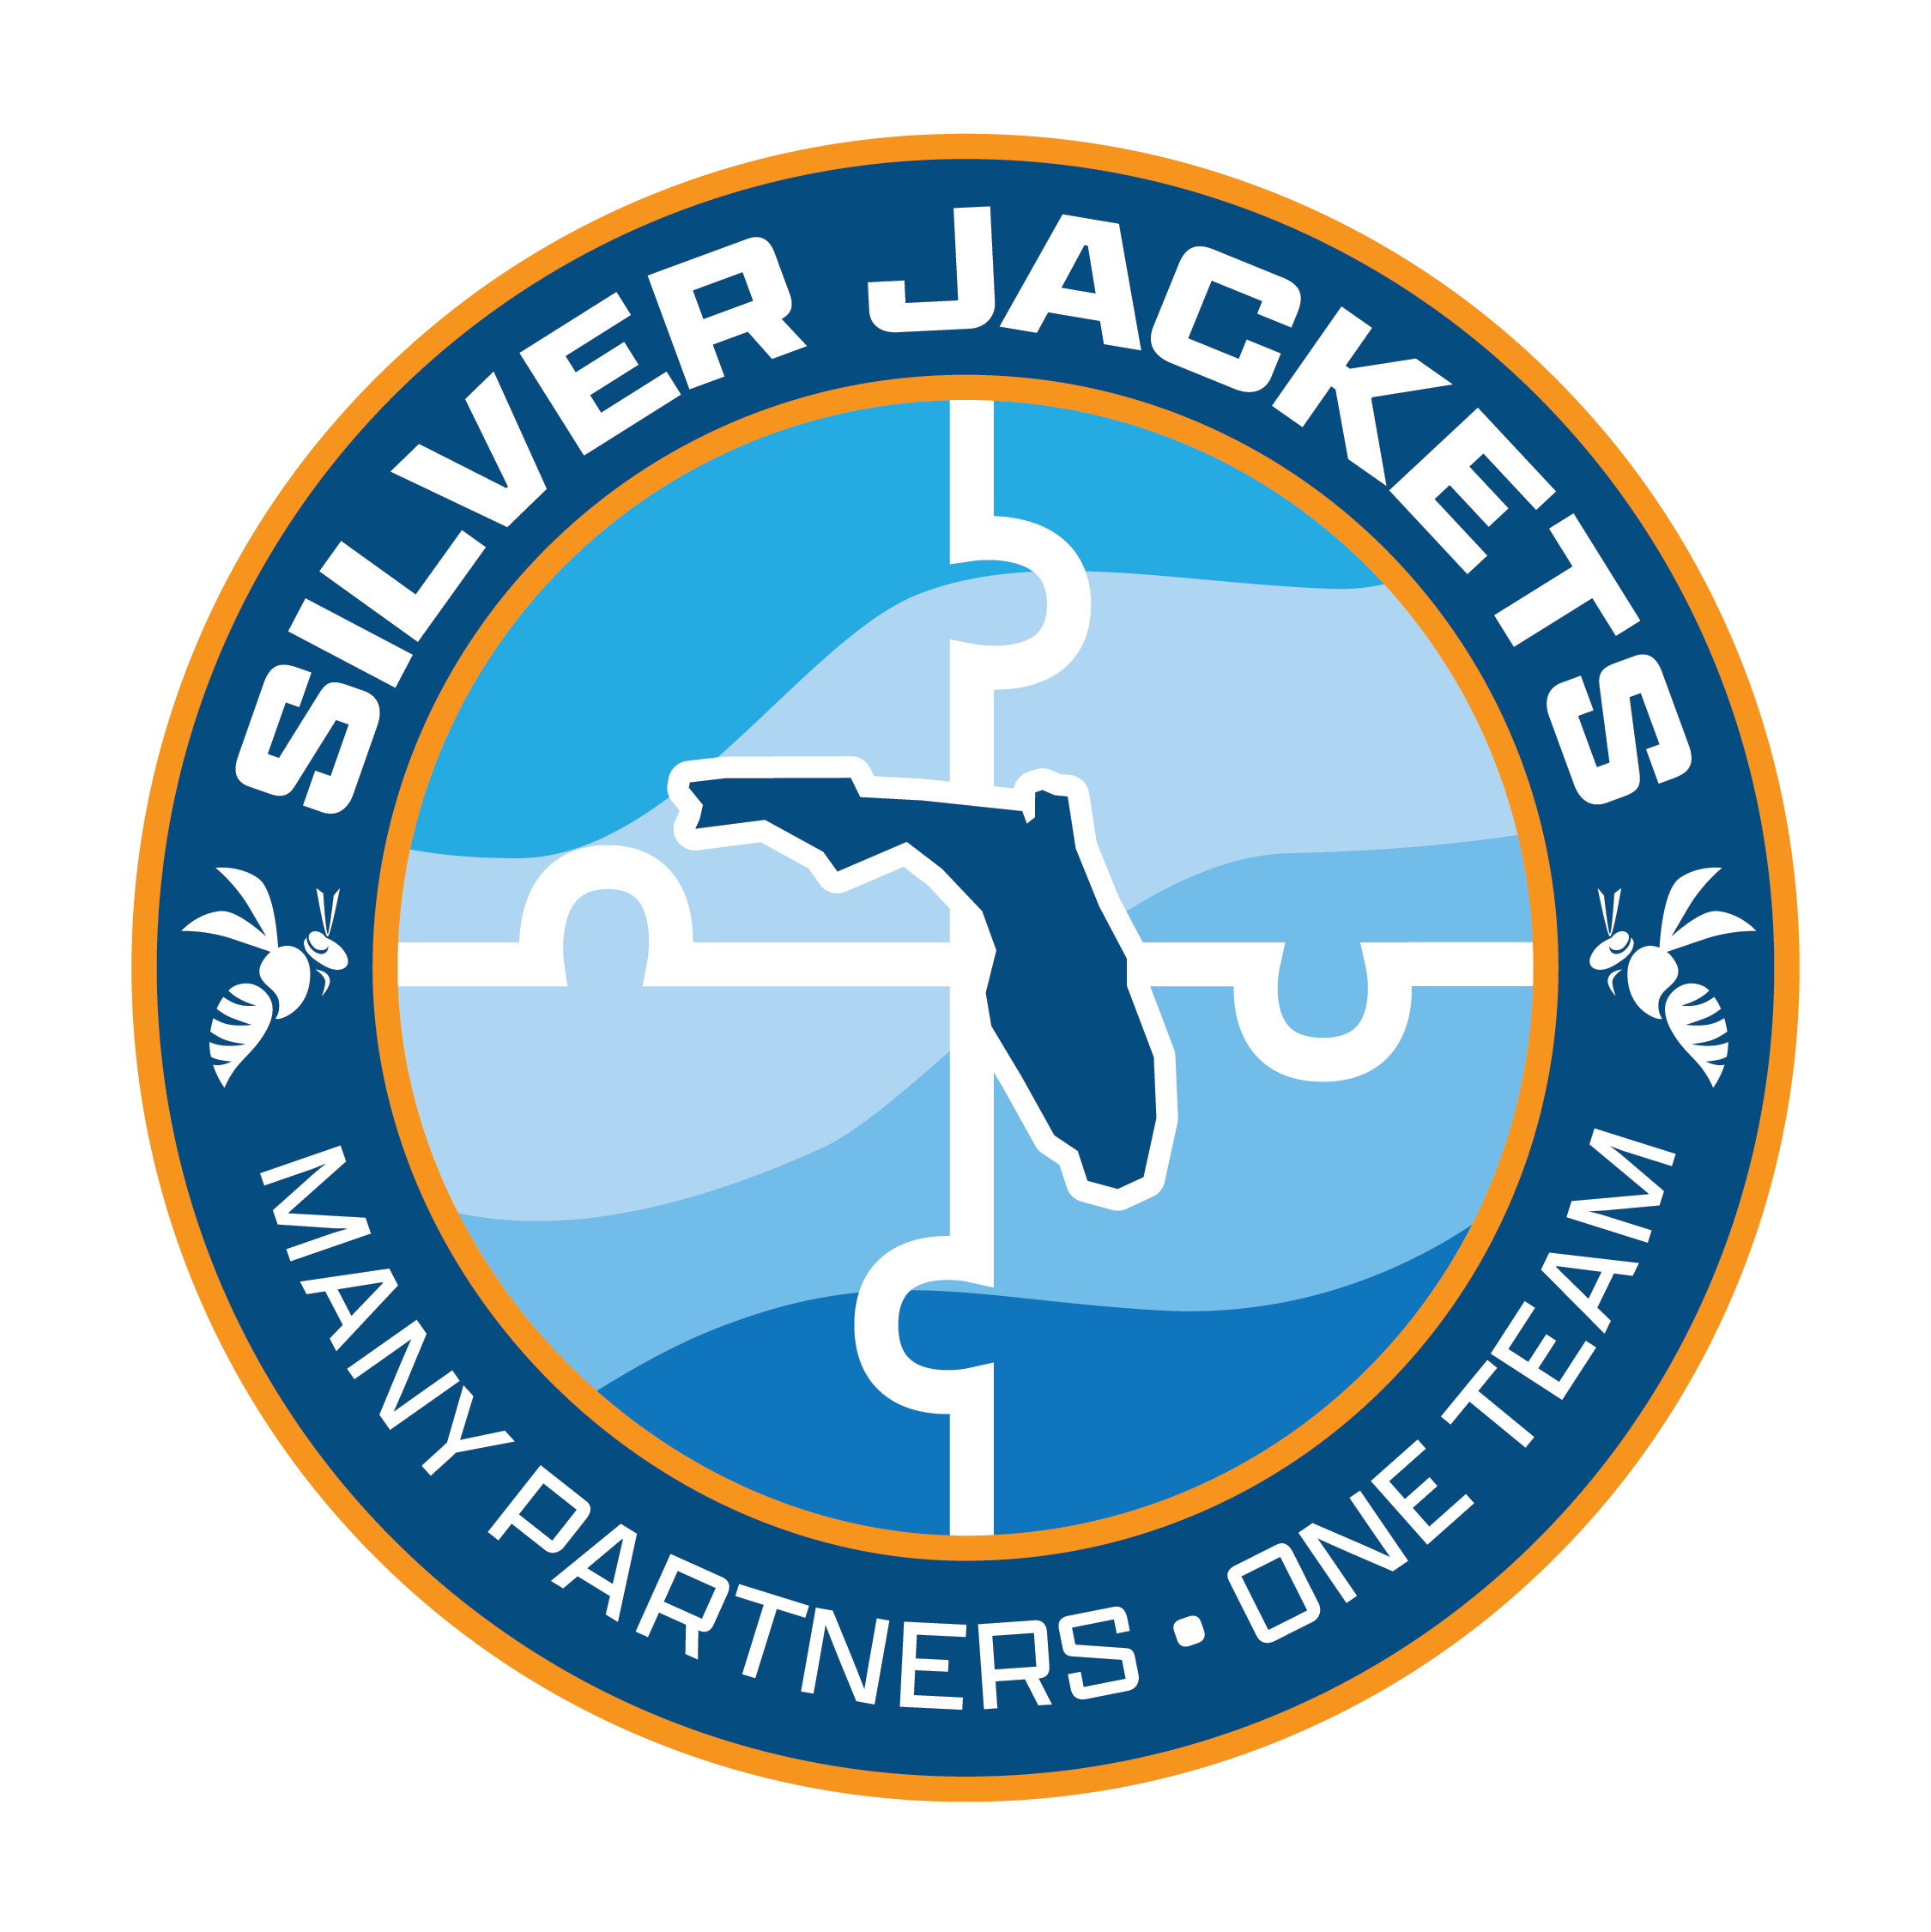 Florida Silver Jackets logo